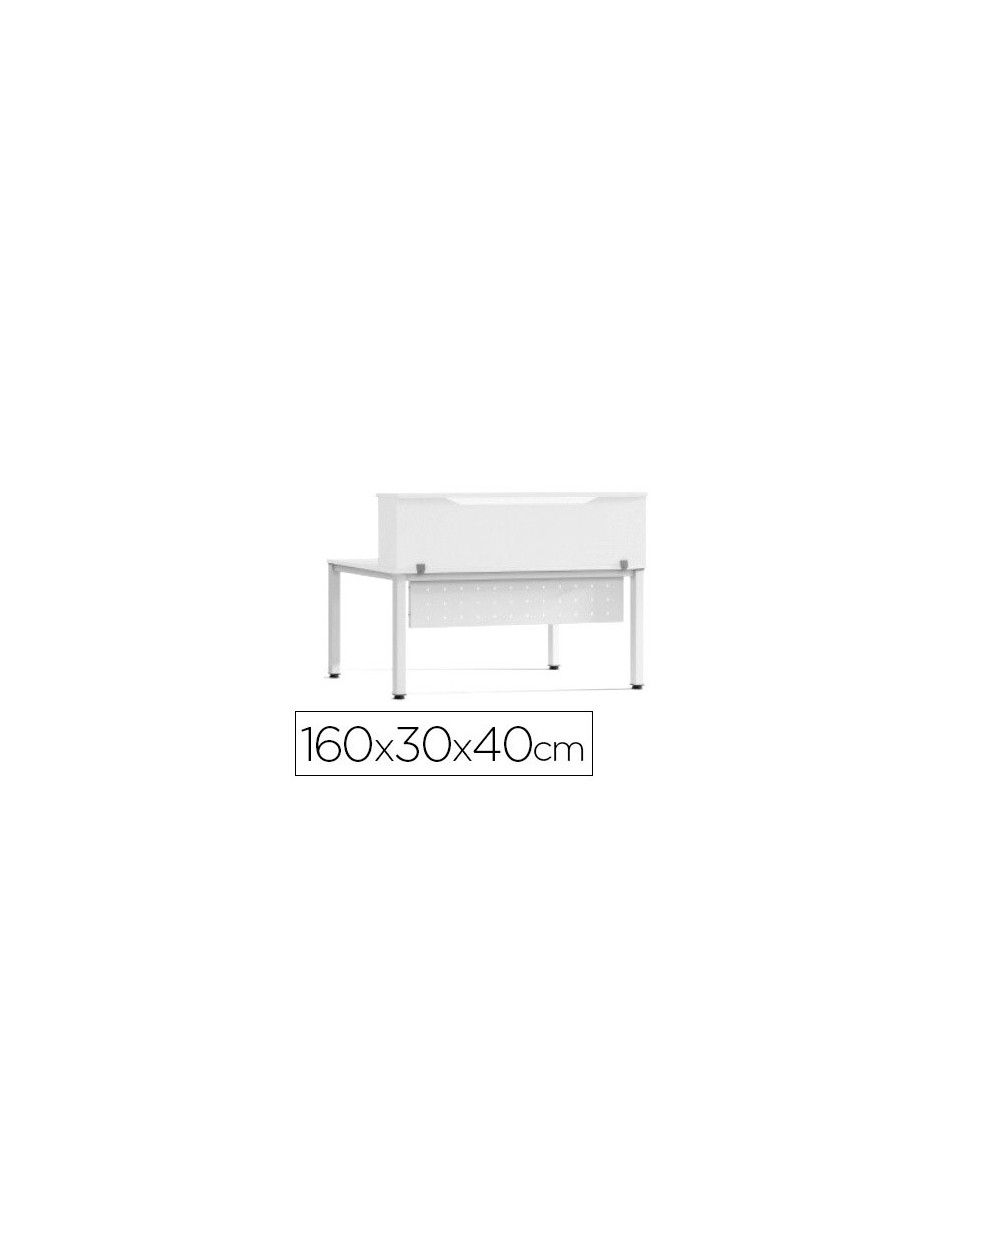 Mostrador de altillo rocada valido para mesas work metal executive 160x30x40 cm acabado aw04 blanco blanco